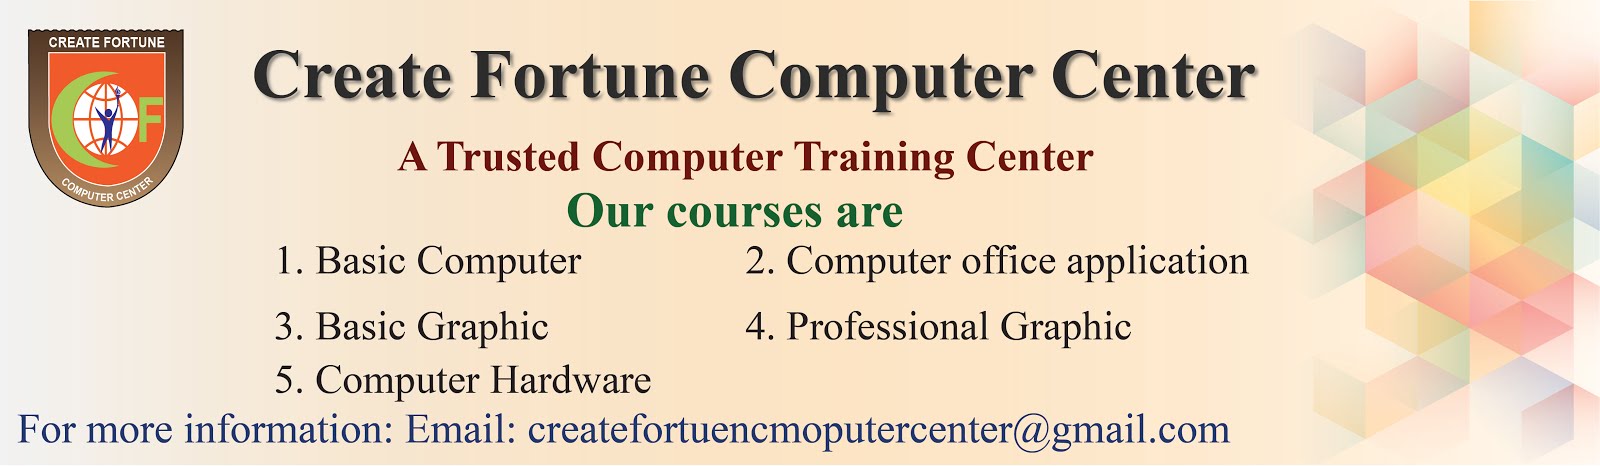 CREATE FORTUNE COMPUTER CENTER 